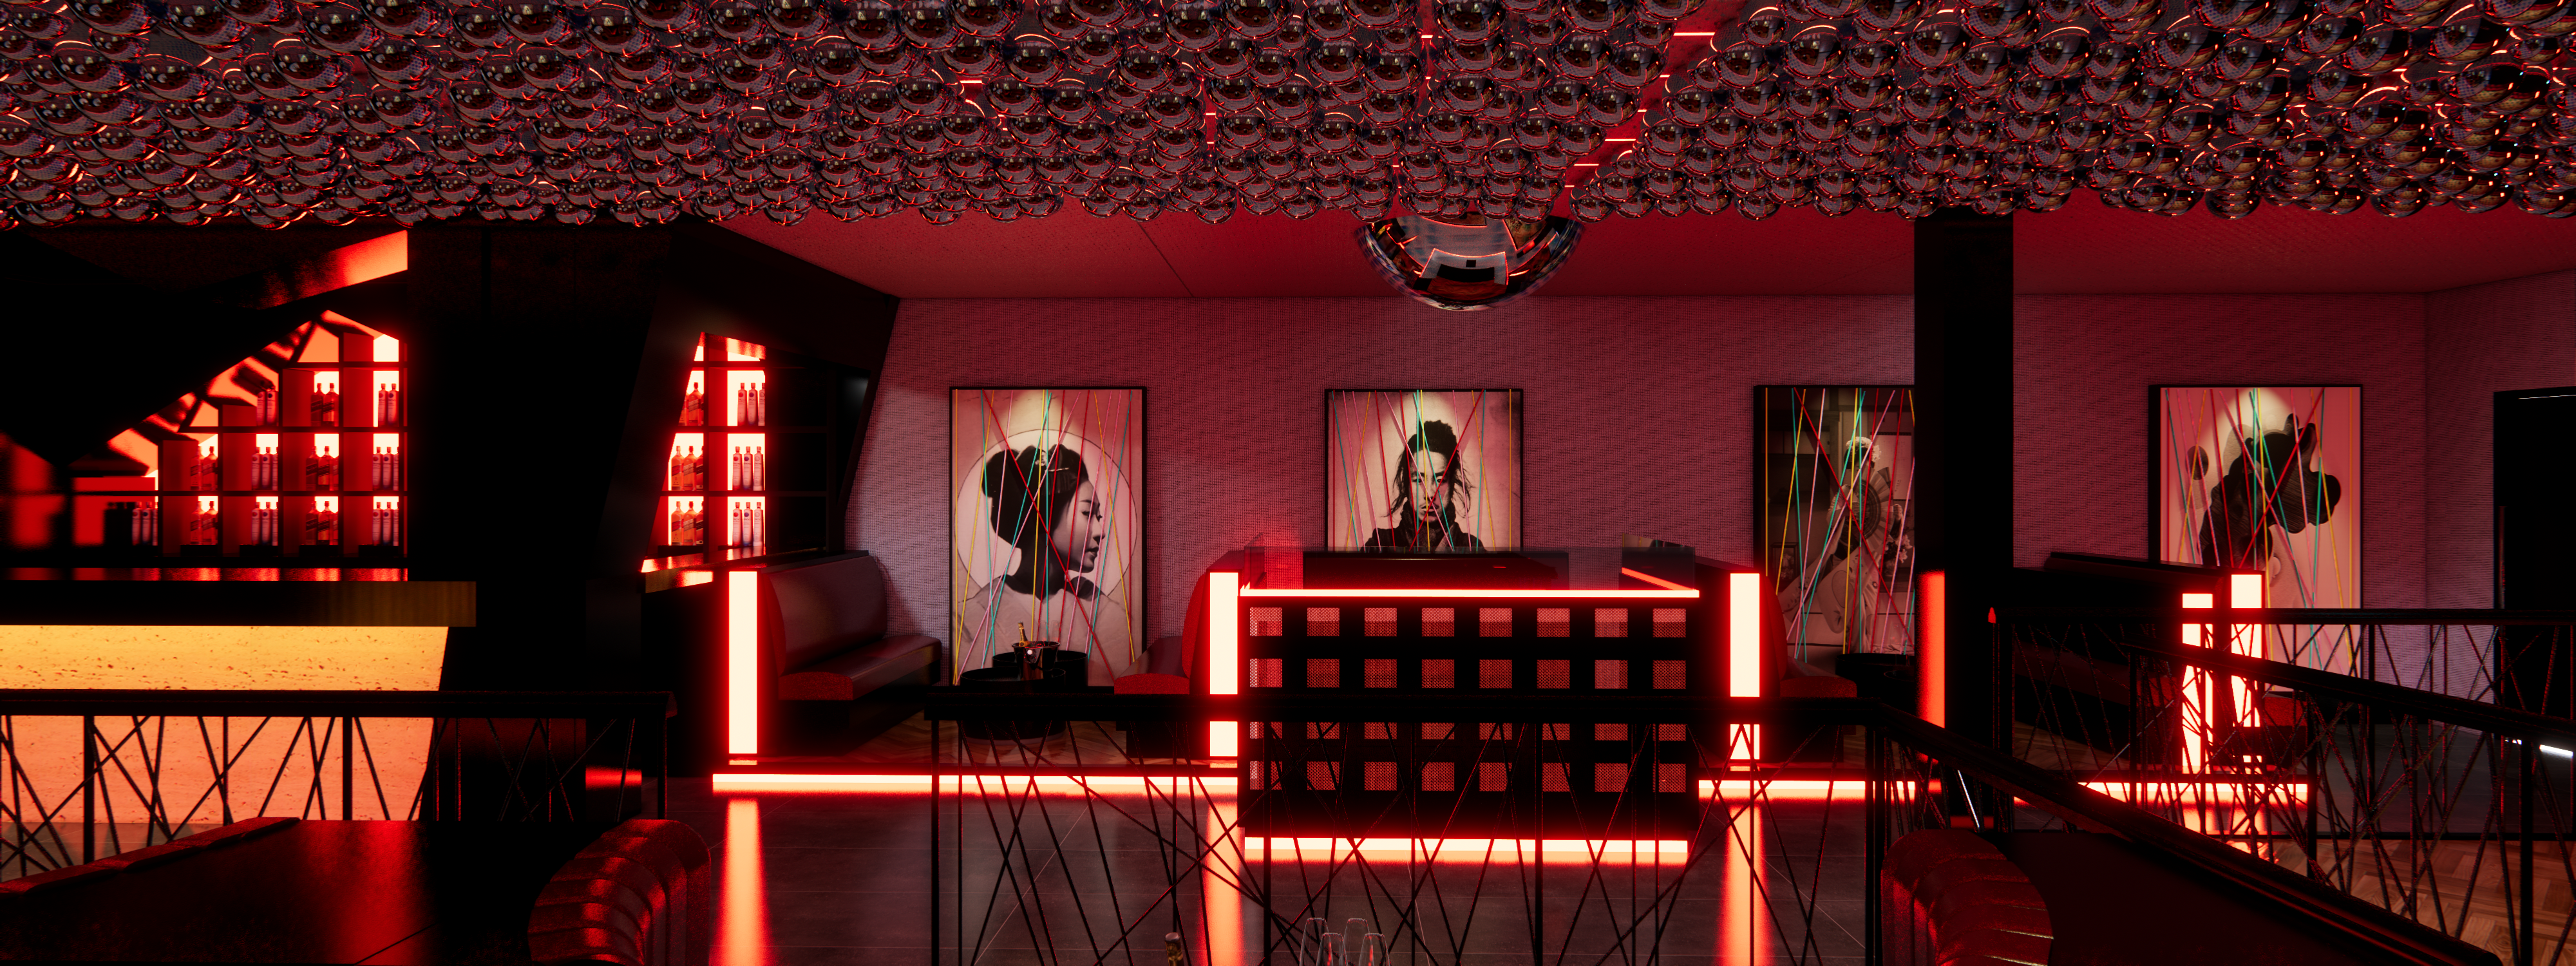 Projeção 3D exibe pista de dança com quadros ao fundo e iluminação vermelha.